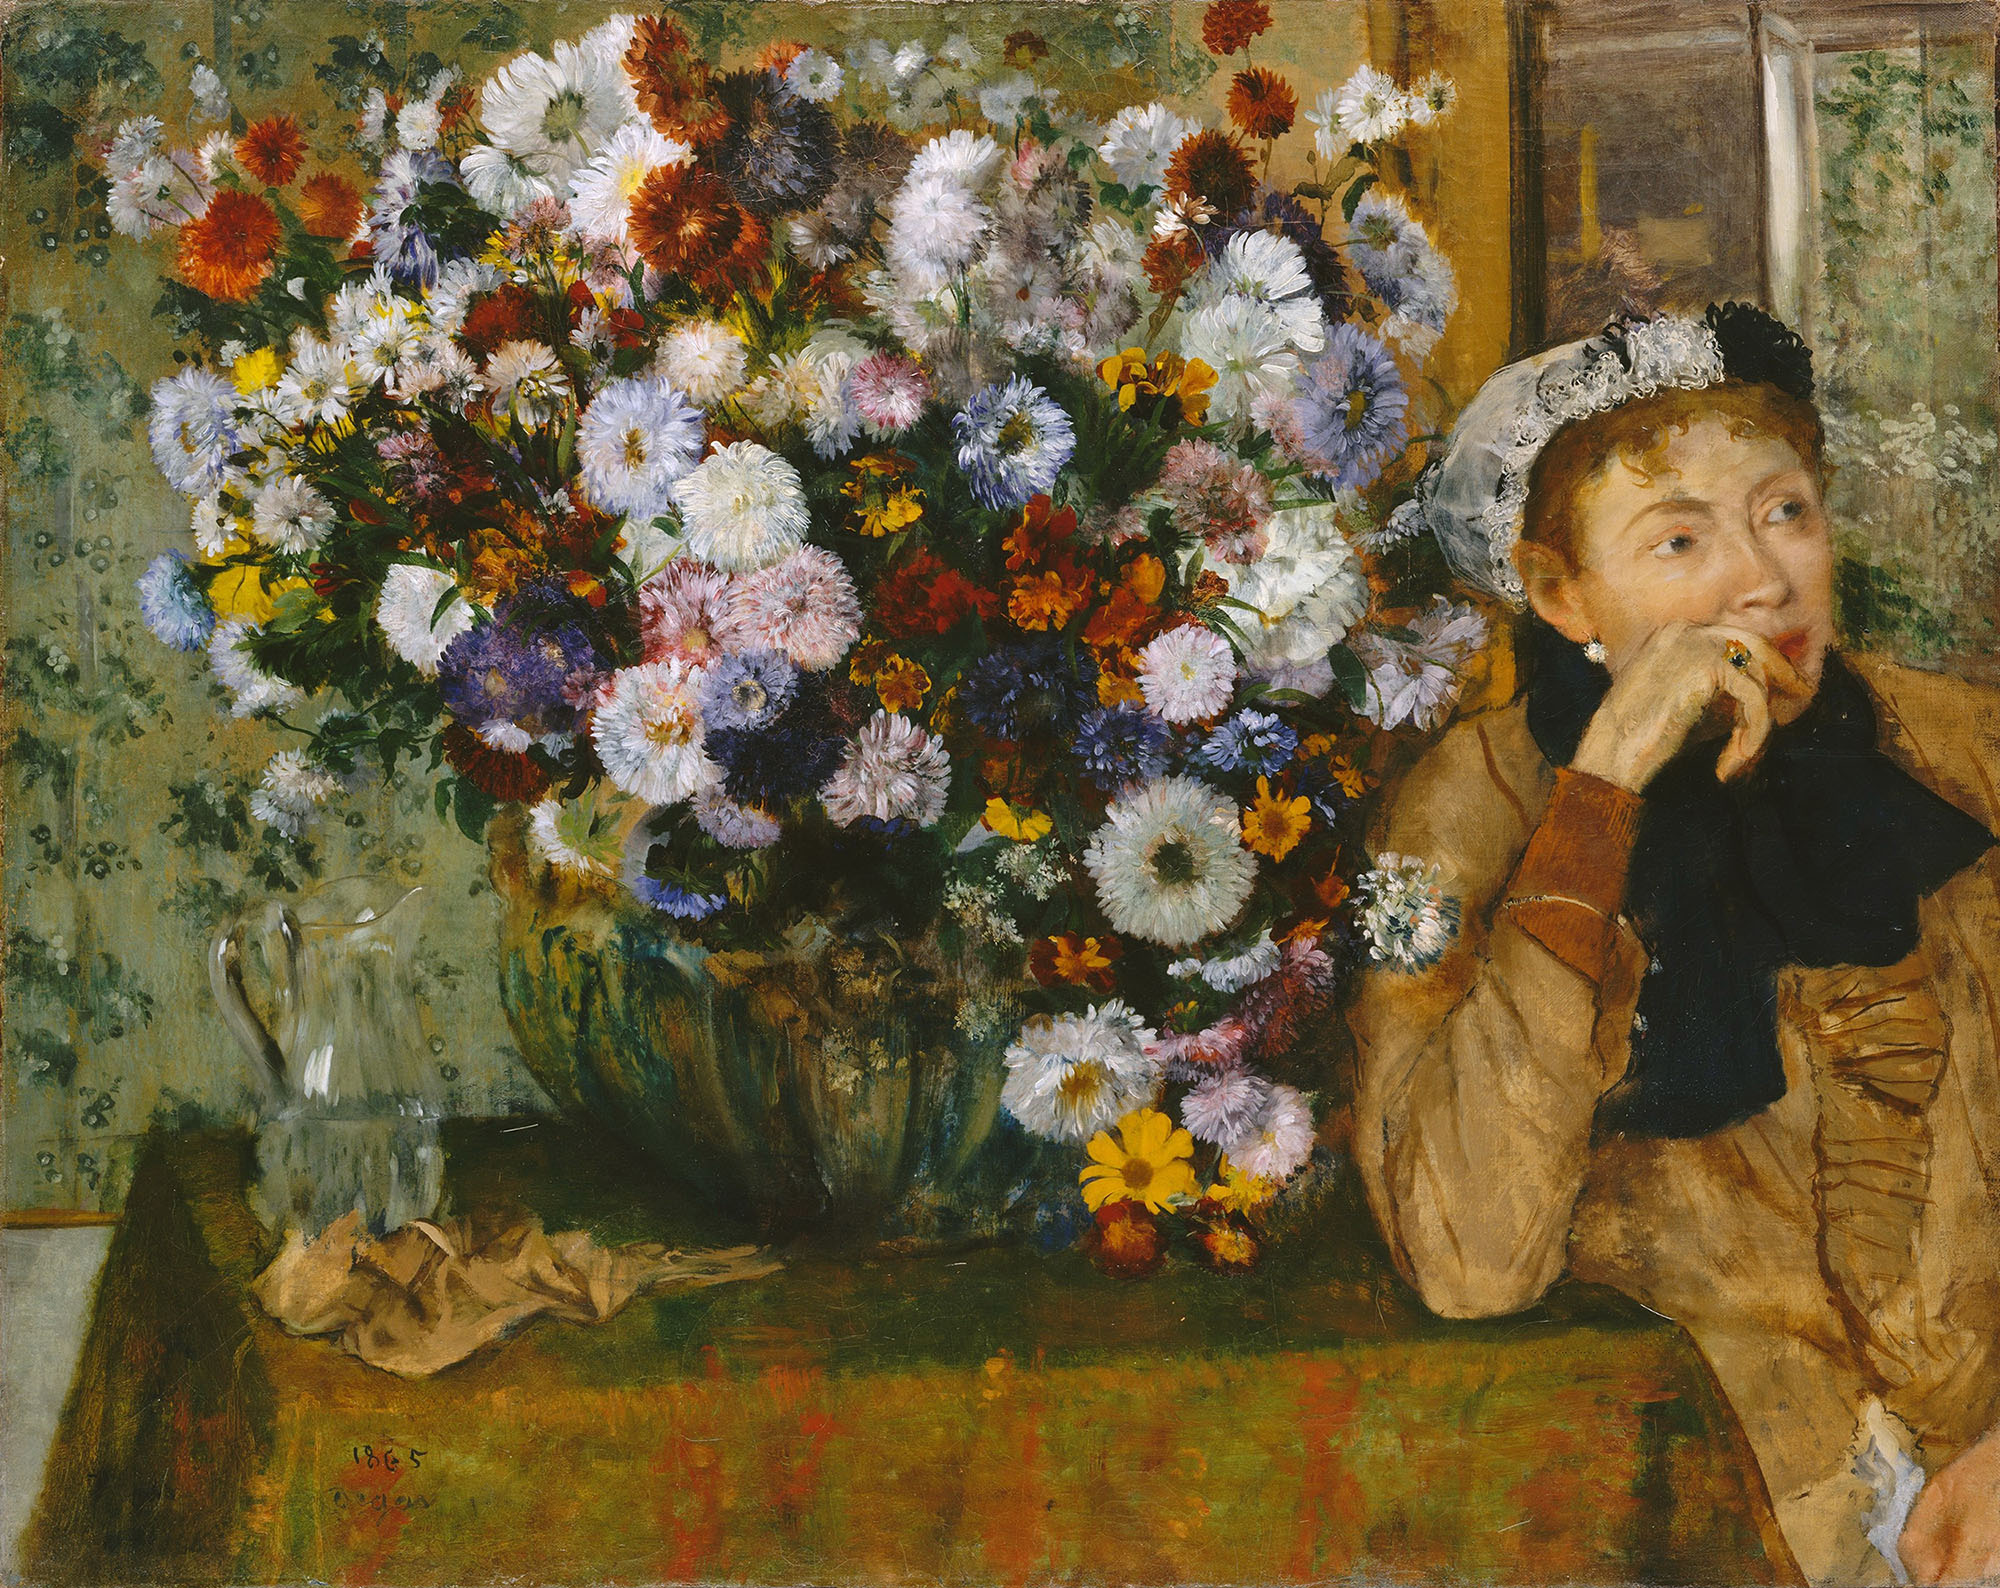 Эдгар Дега. "Женщина, сидящая рядом с вазой с хризантемами". 1865.